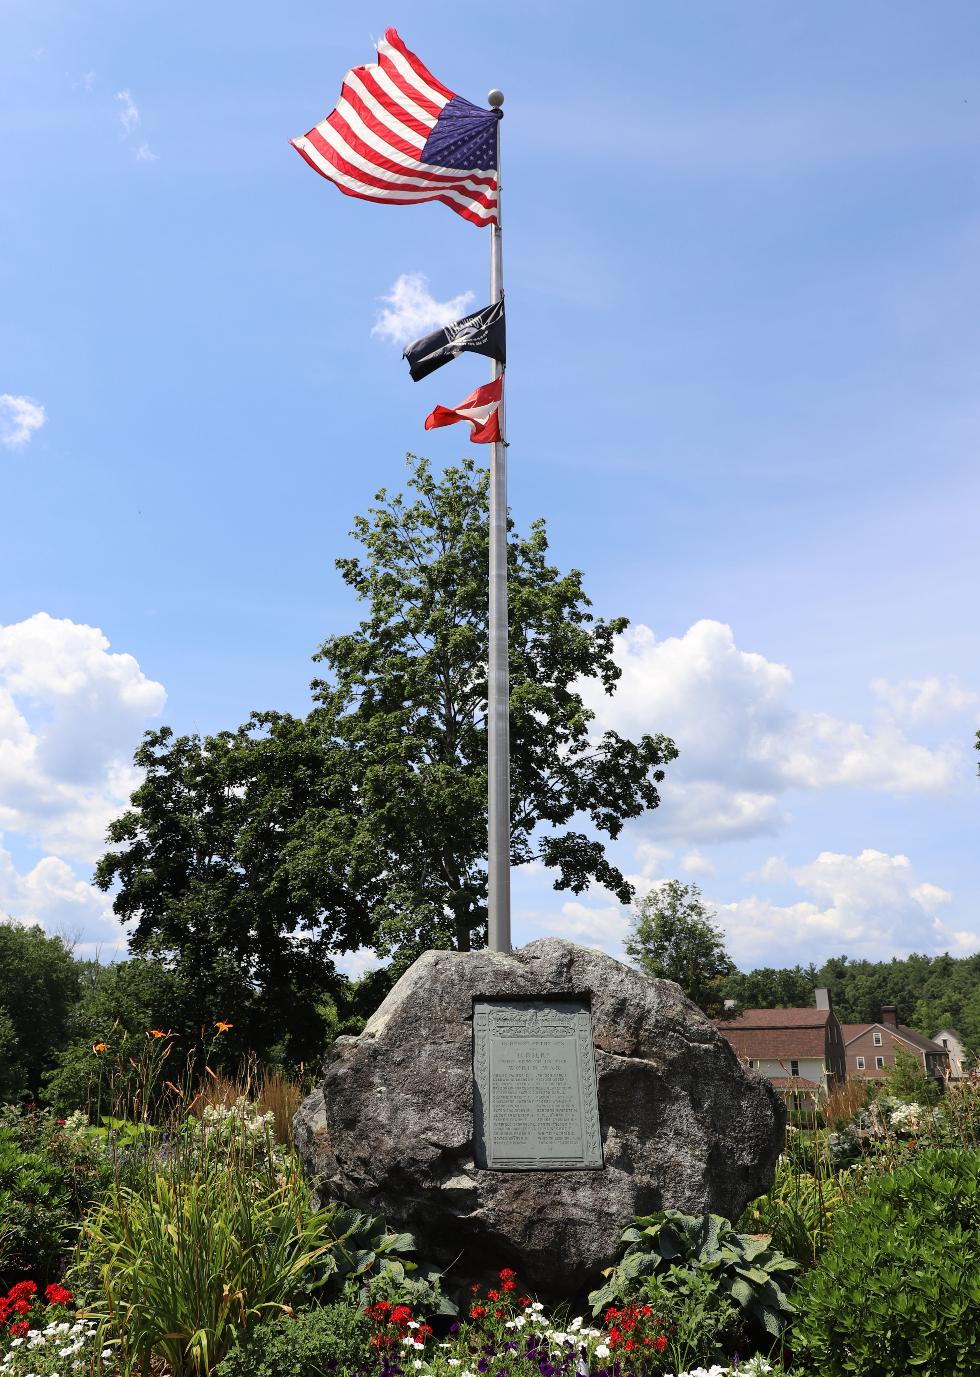 Sudbury Massachusetts Word War I Veterans Memorial